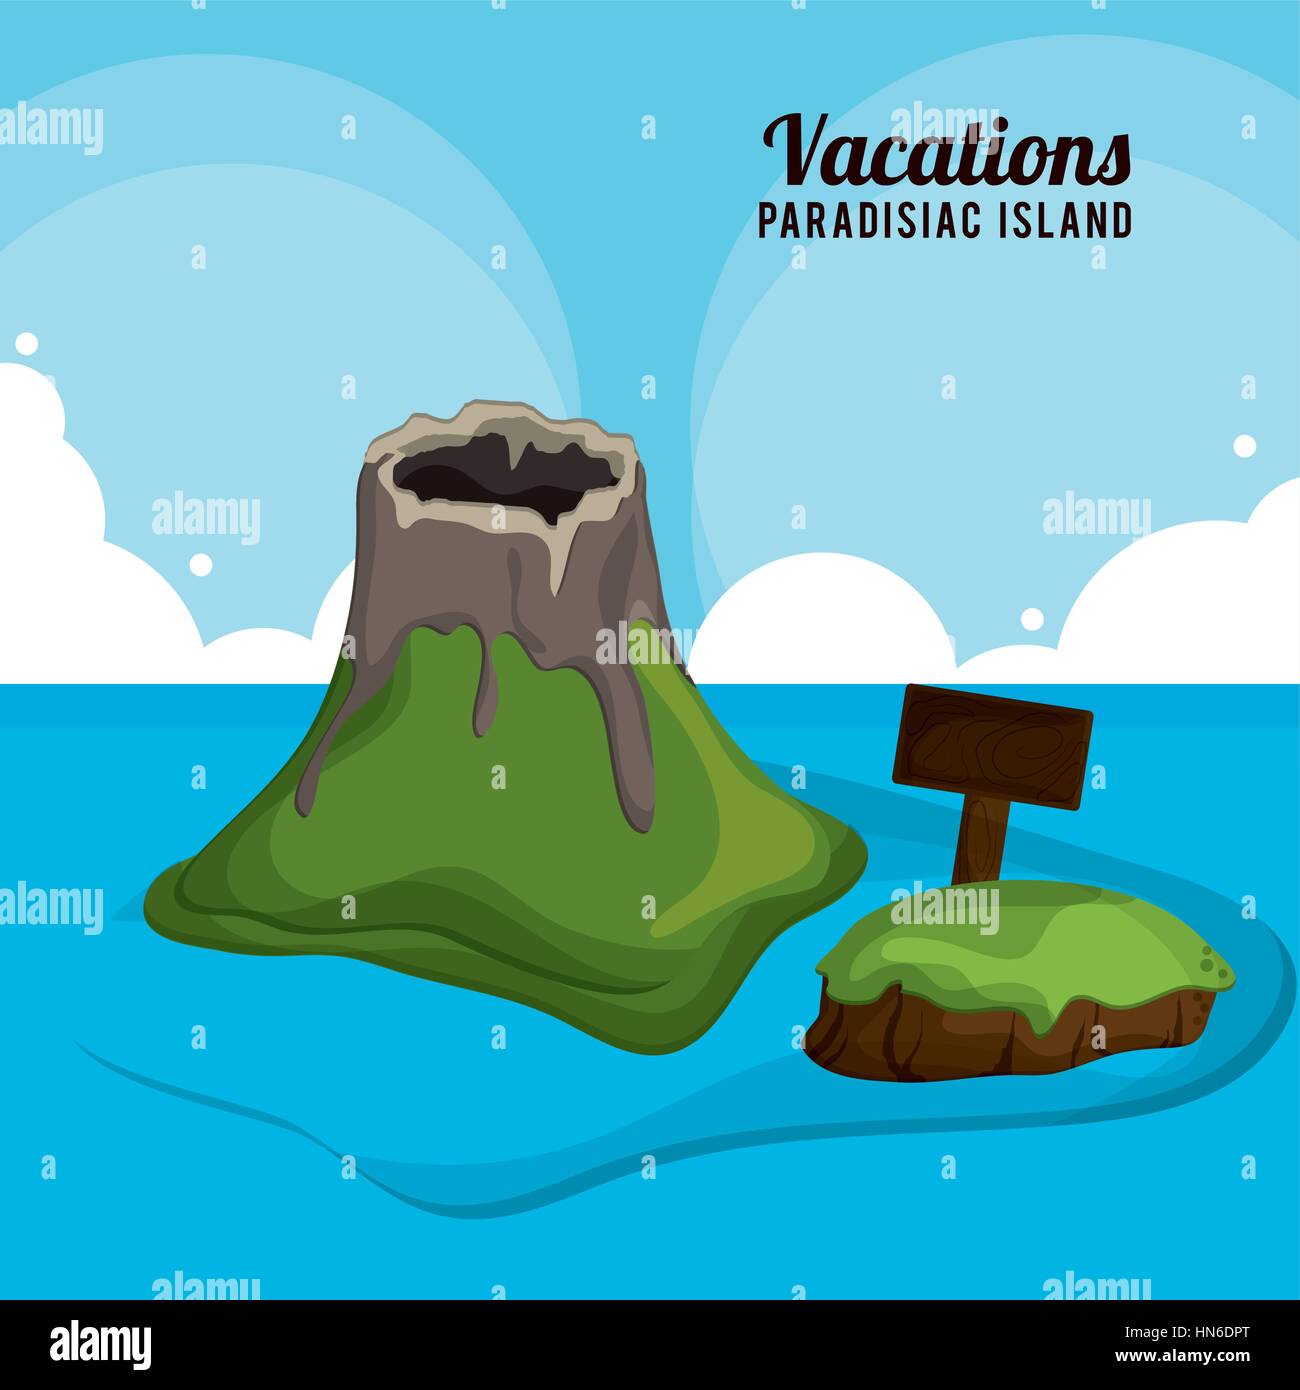 volcano wooden board vacations paradisiac island Stock Vector